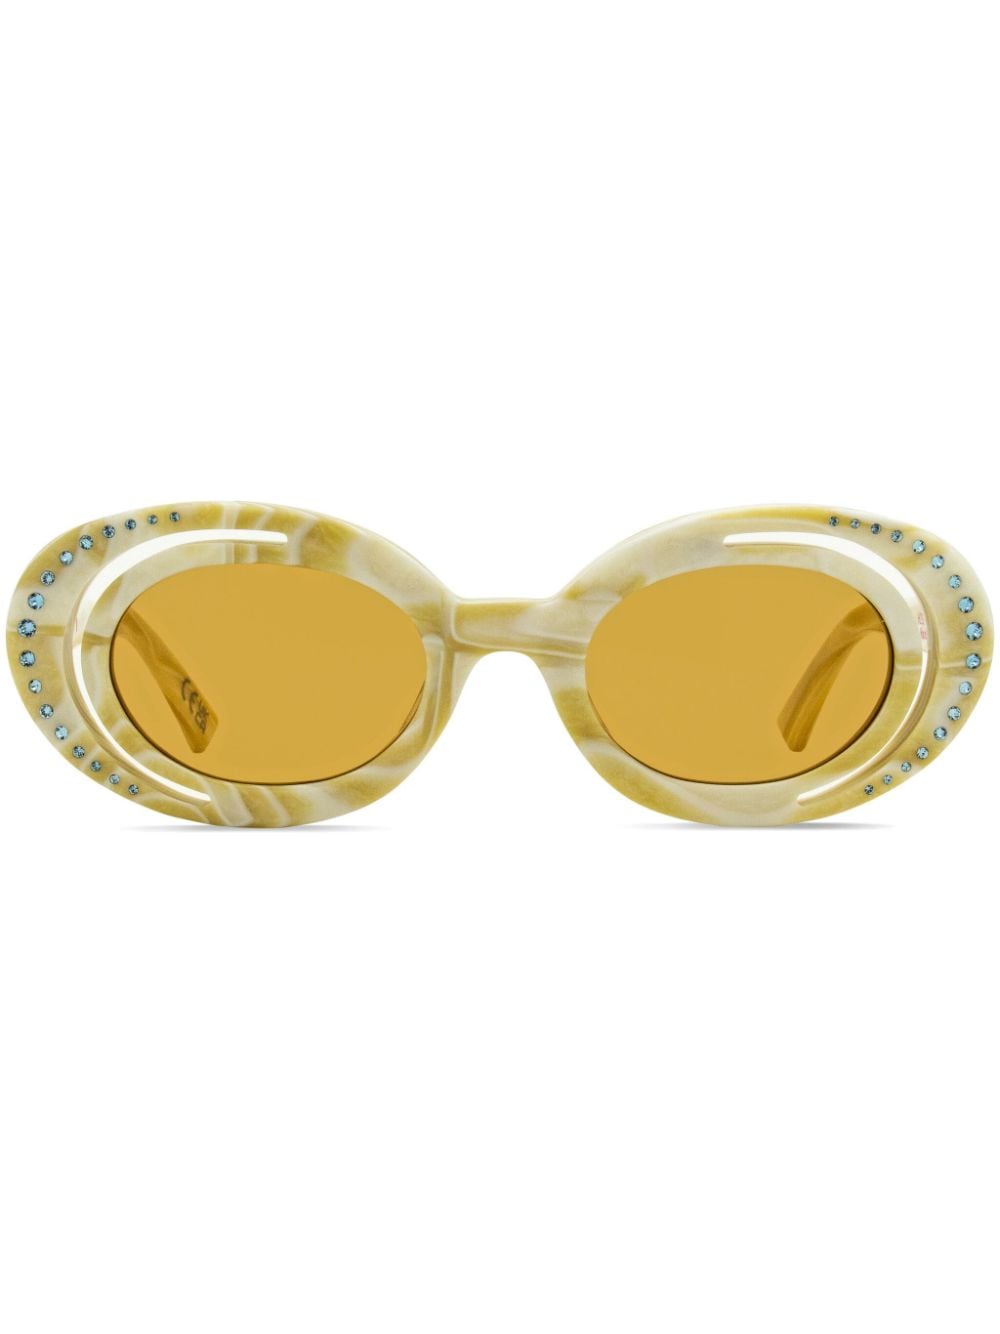 Marni Eyewear Zion Canyon Sonnenbrille - Nude von Marni Eyewear